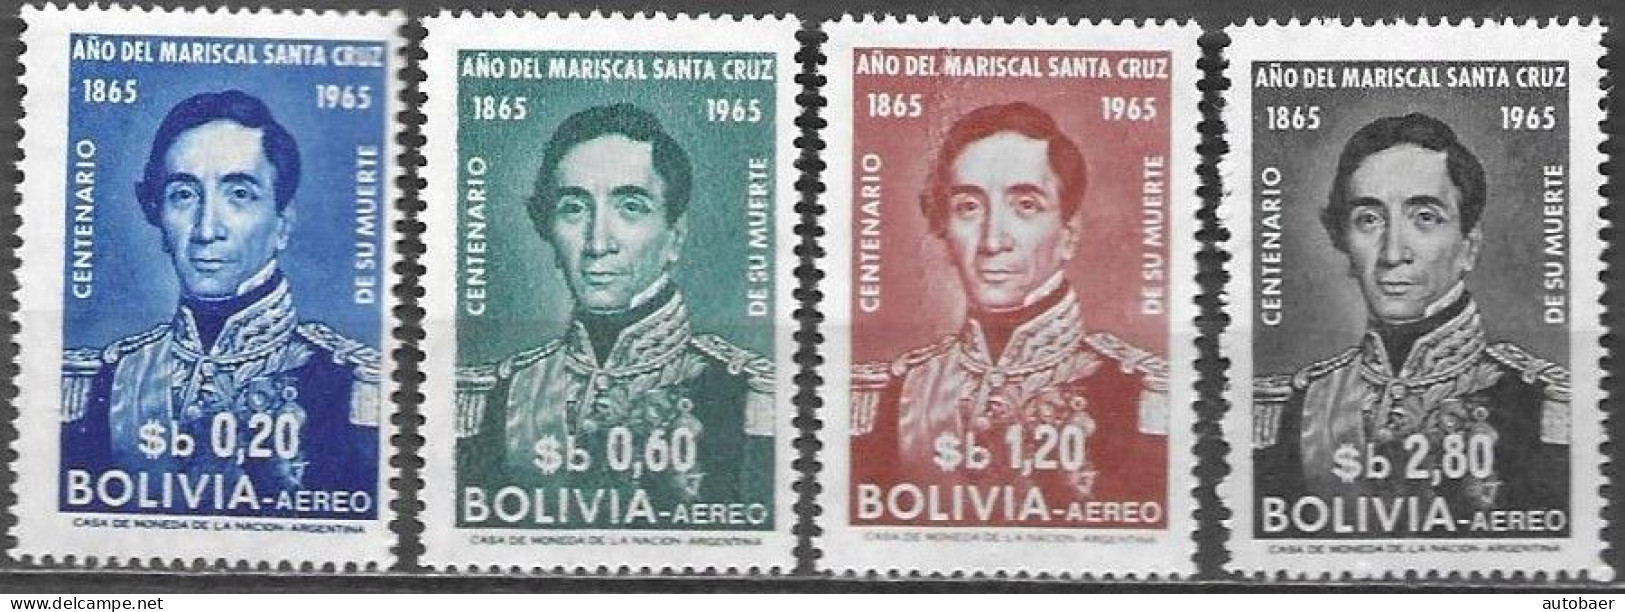 Bolivia Bolivie Bolivien 1966/1965 Mariscal Andres De Santa Cruz Michel No. 709-12 MNH Mint Postfrisch Neuf ** - Bolivia